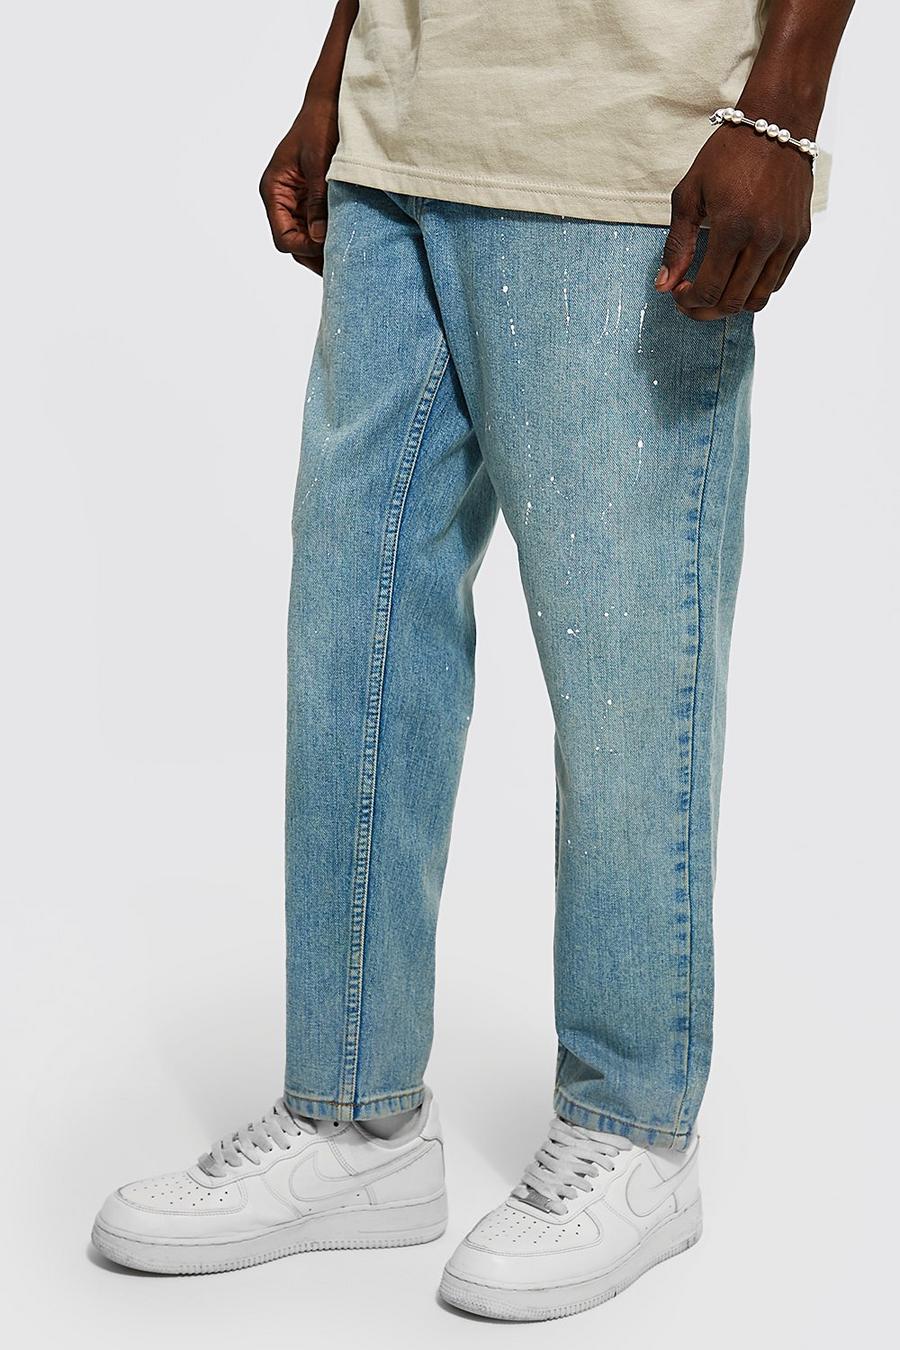 כחול עתיק מכנסי ג'ינס בגזרת קרסול צרה עם כתמי נתז צבע